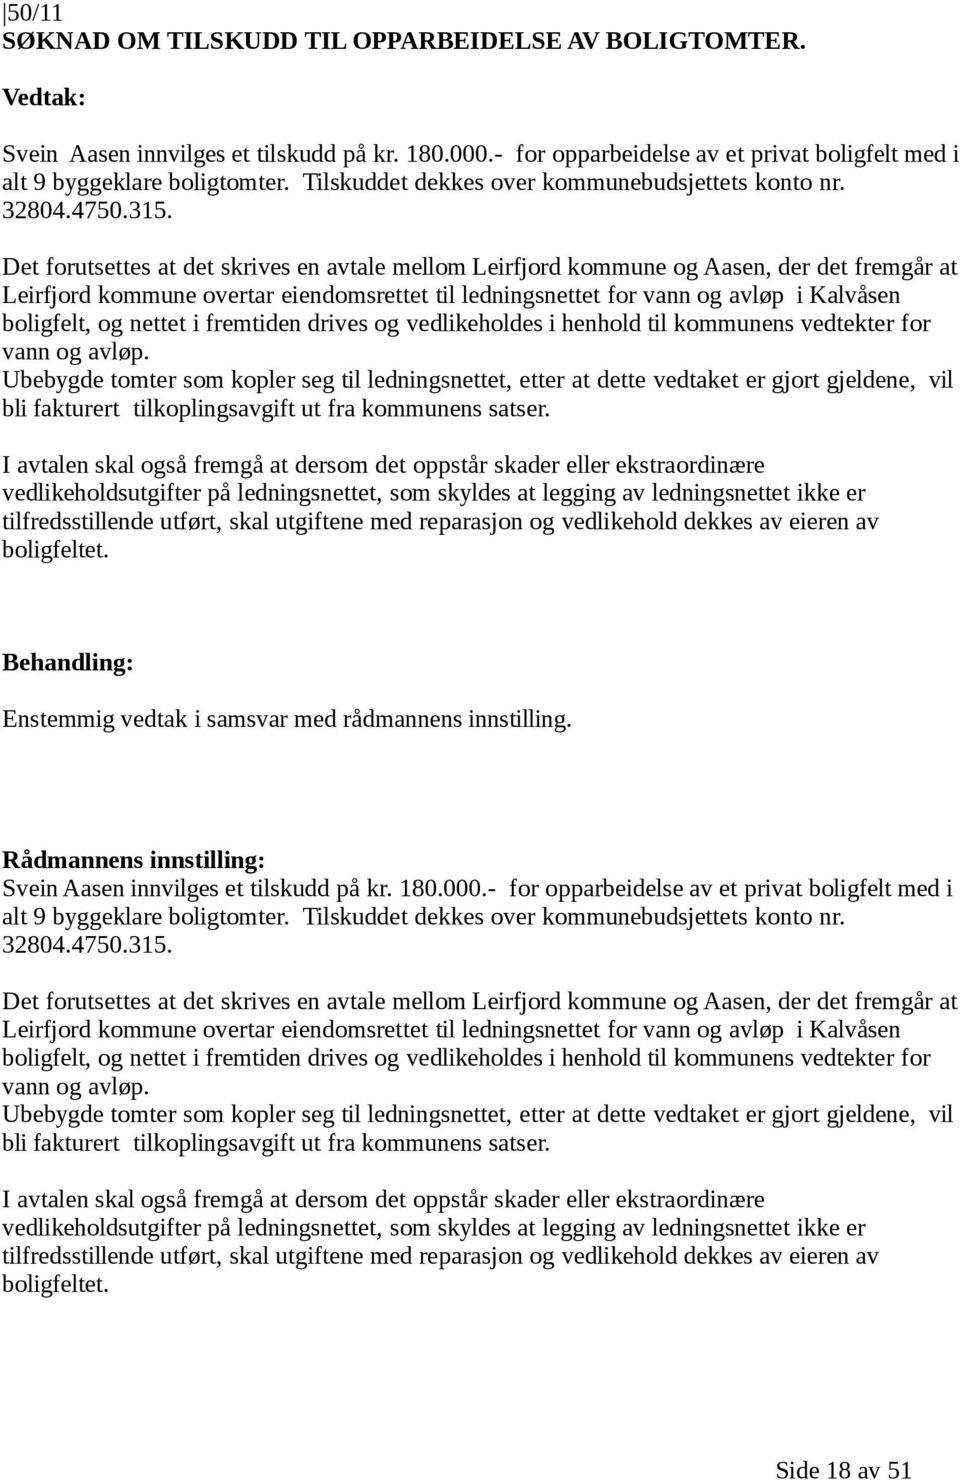 Det forutsettes at det skrives en avtale mellom Leirfjord kommune og Aasen, der det fremgår at Leirfjord kommune overtar eiendomsrettet til ledningsnettet for vann og avløp i Kalvåsen boligfelt, og